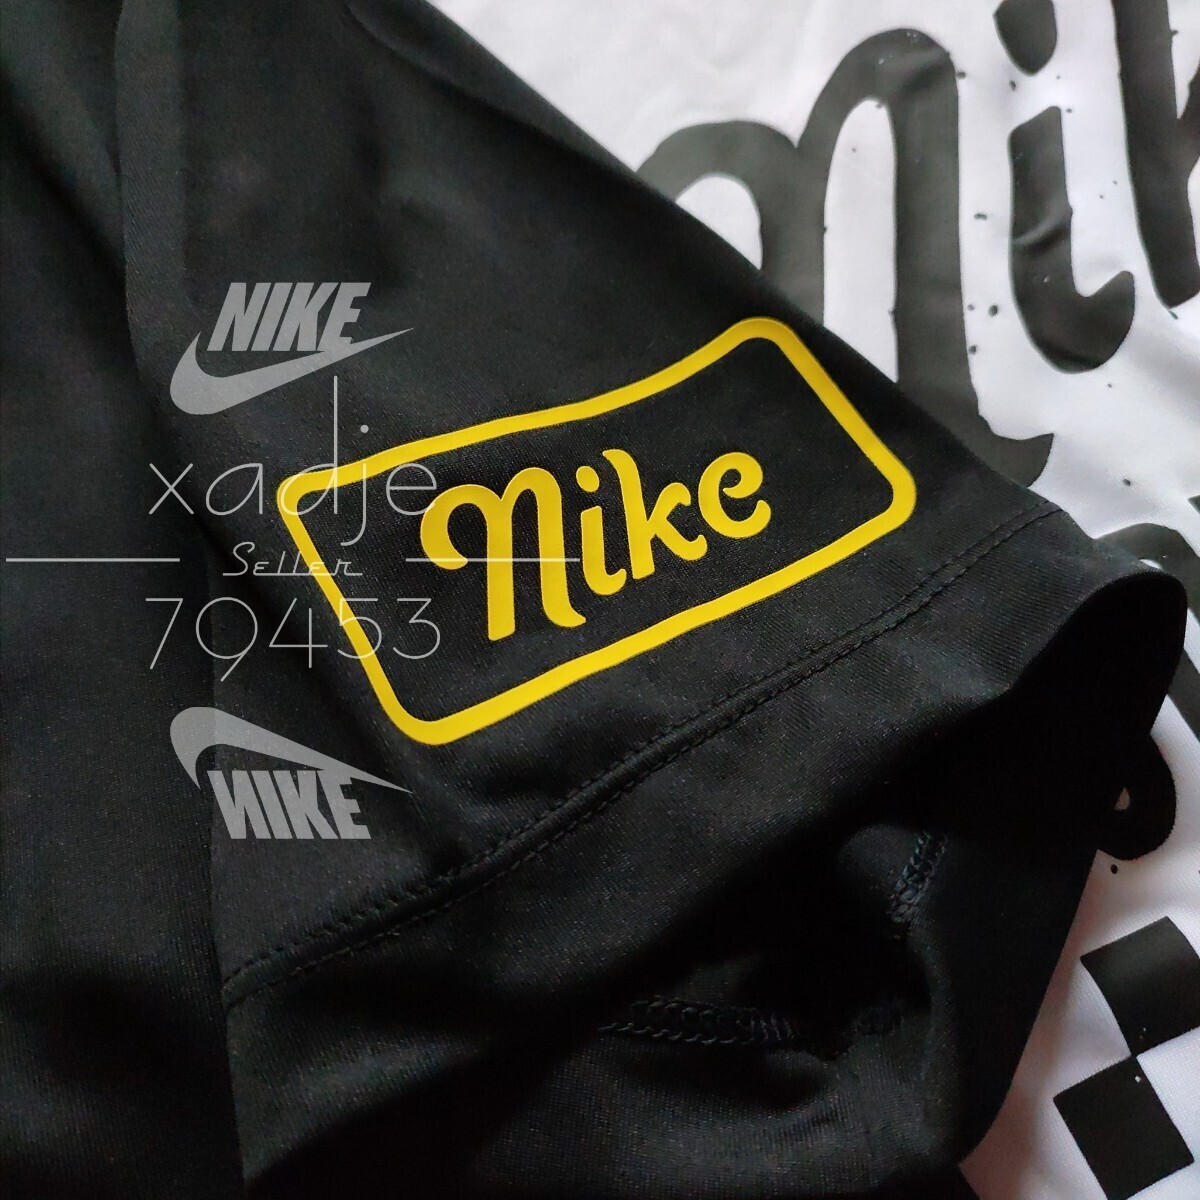  новый товар стандартный товар NIKE Nike BODY SHOP джерси короткий рукав футболка 2 шт. комплект чёрный черный белый белый Logo принт L